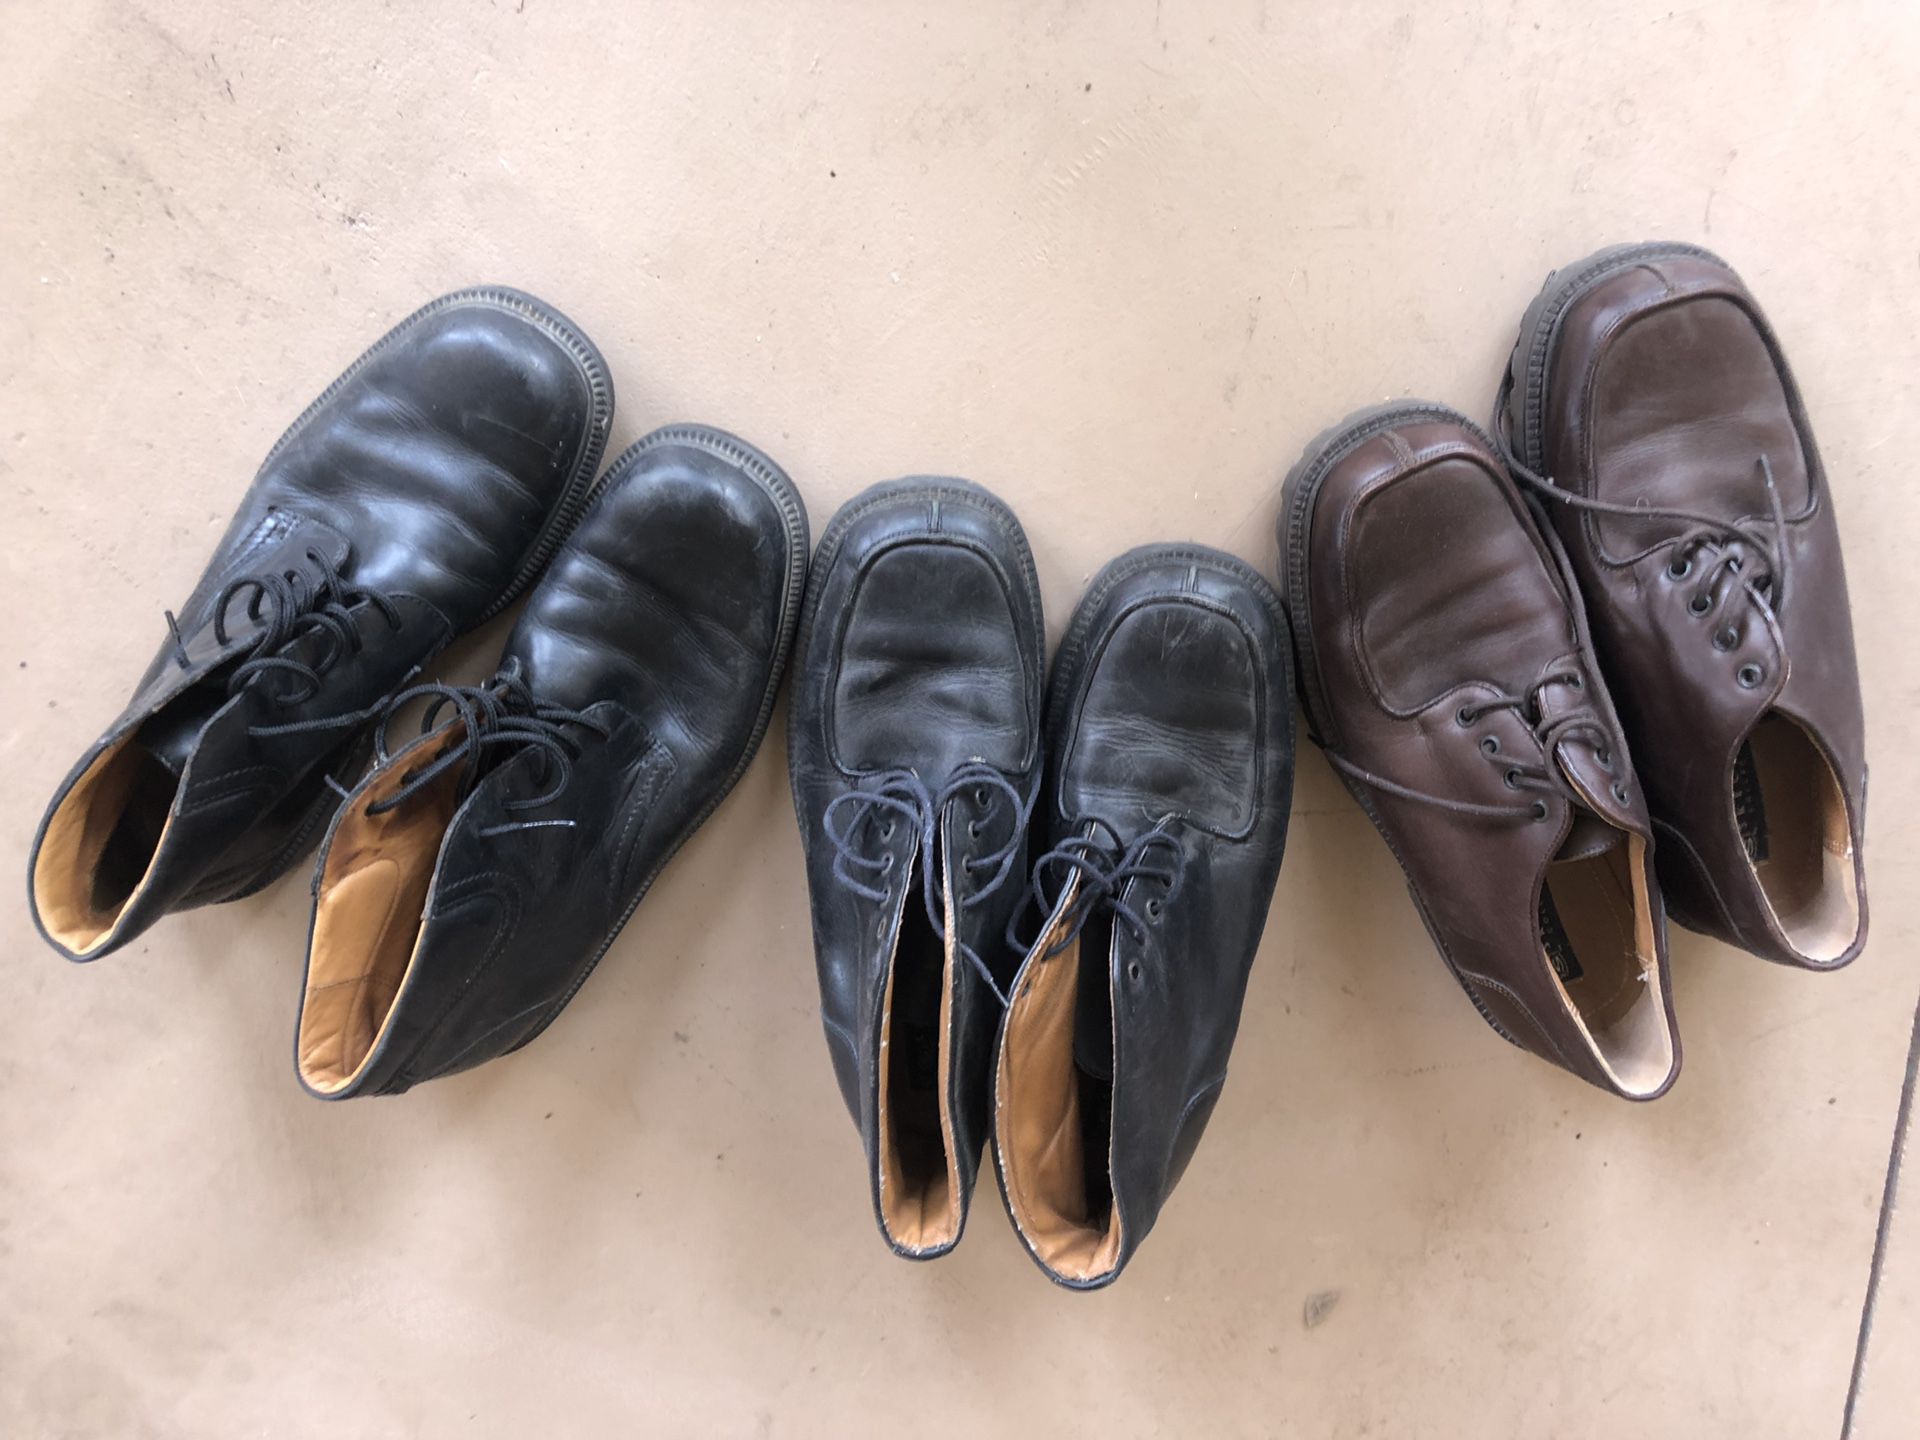 Men’s size 11 dress shoes